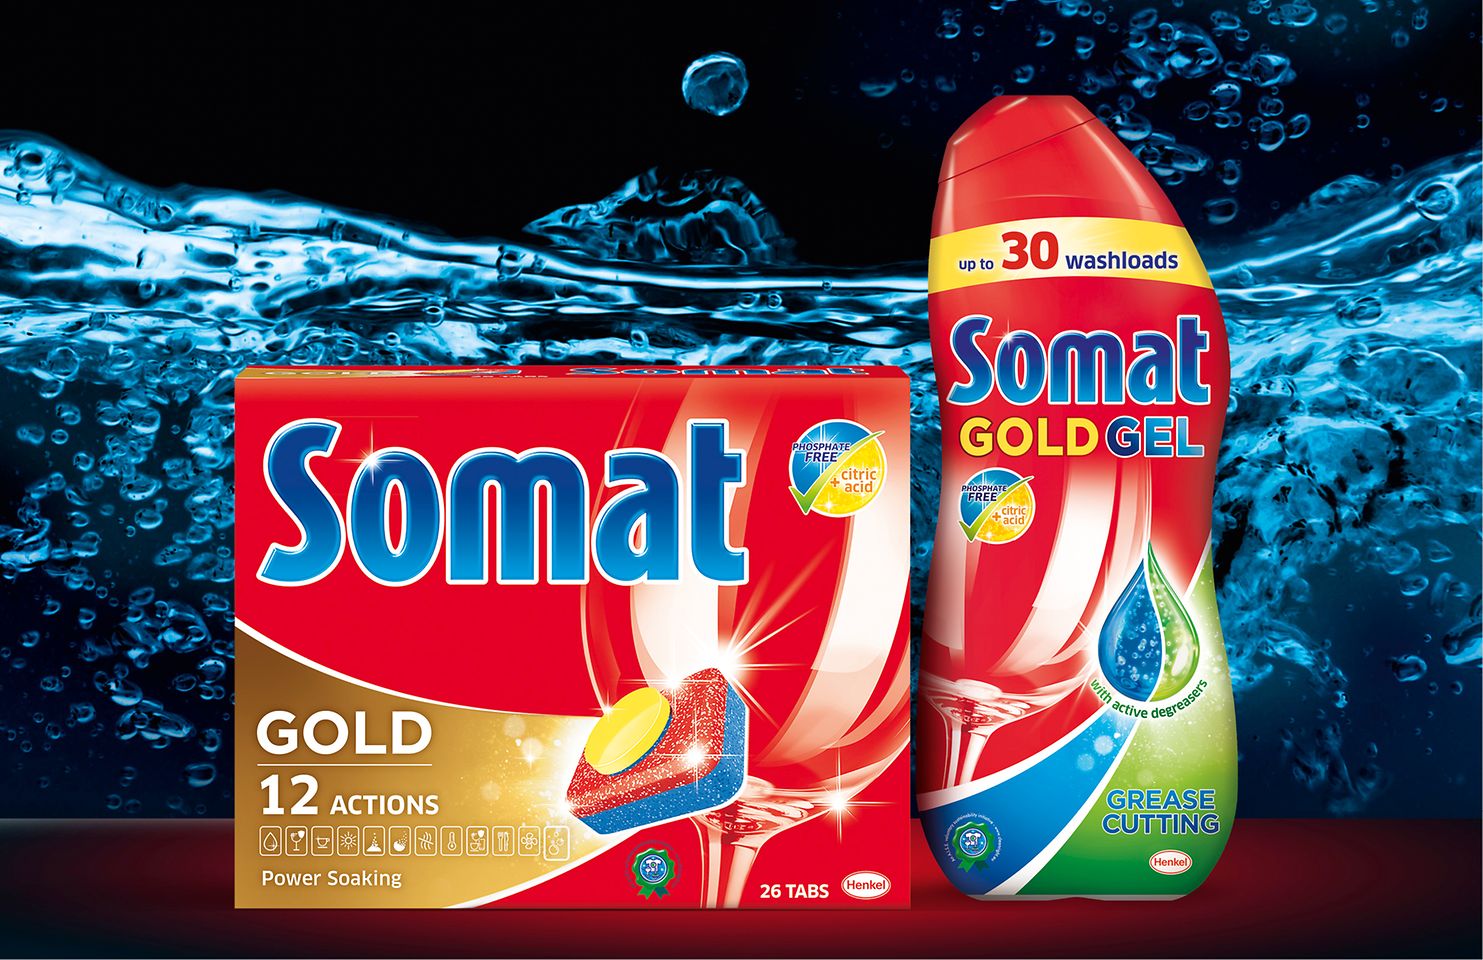 
Innovationen Q2/2016: Somat phosphatfrei, das erste Maschinengeschirrspülmittel von Henkel ohne Phosphate, wurde in Deutschland sowie über 20 weiteren Ländern in West- und Osteuropa eingeführt.